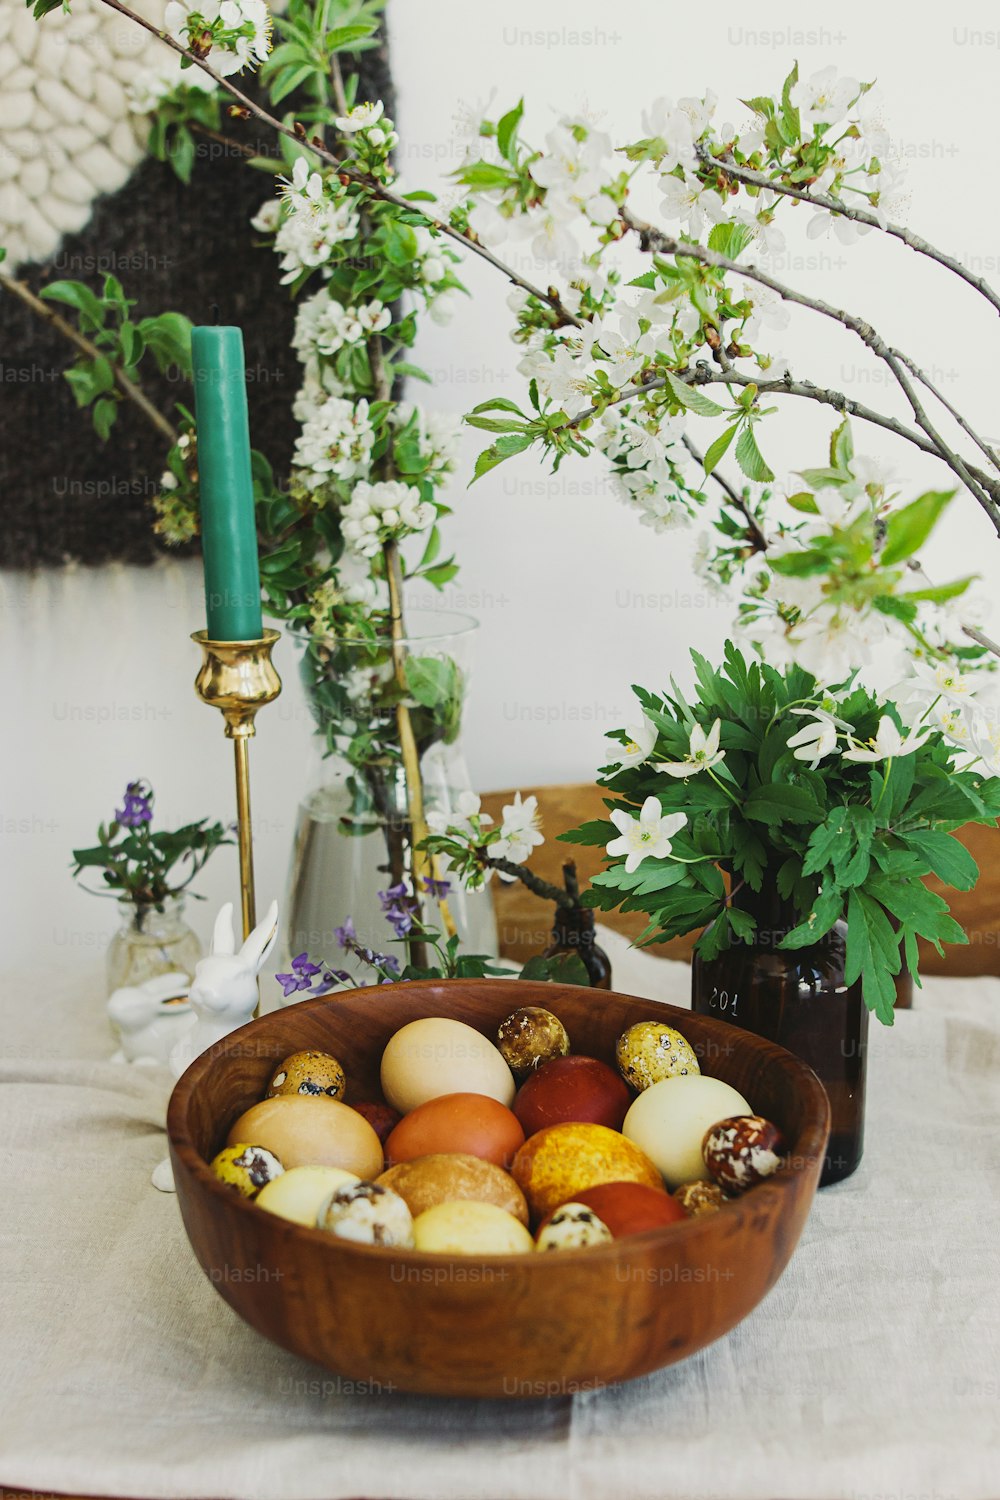 Elegantes huevos de pascua en cuenco de madera sobre mesa rústica con figuritas de conejitos, velas y flores que florecen en primavera. Huevos teñidos al natural en colores amarillo y rojo. ¡Felices Pascuas!